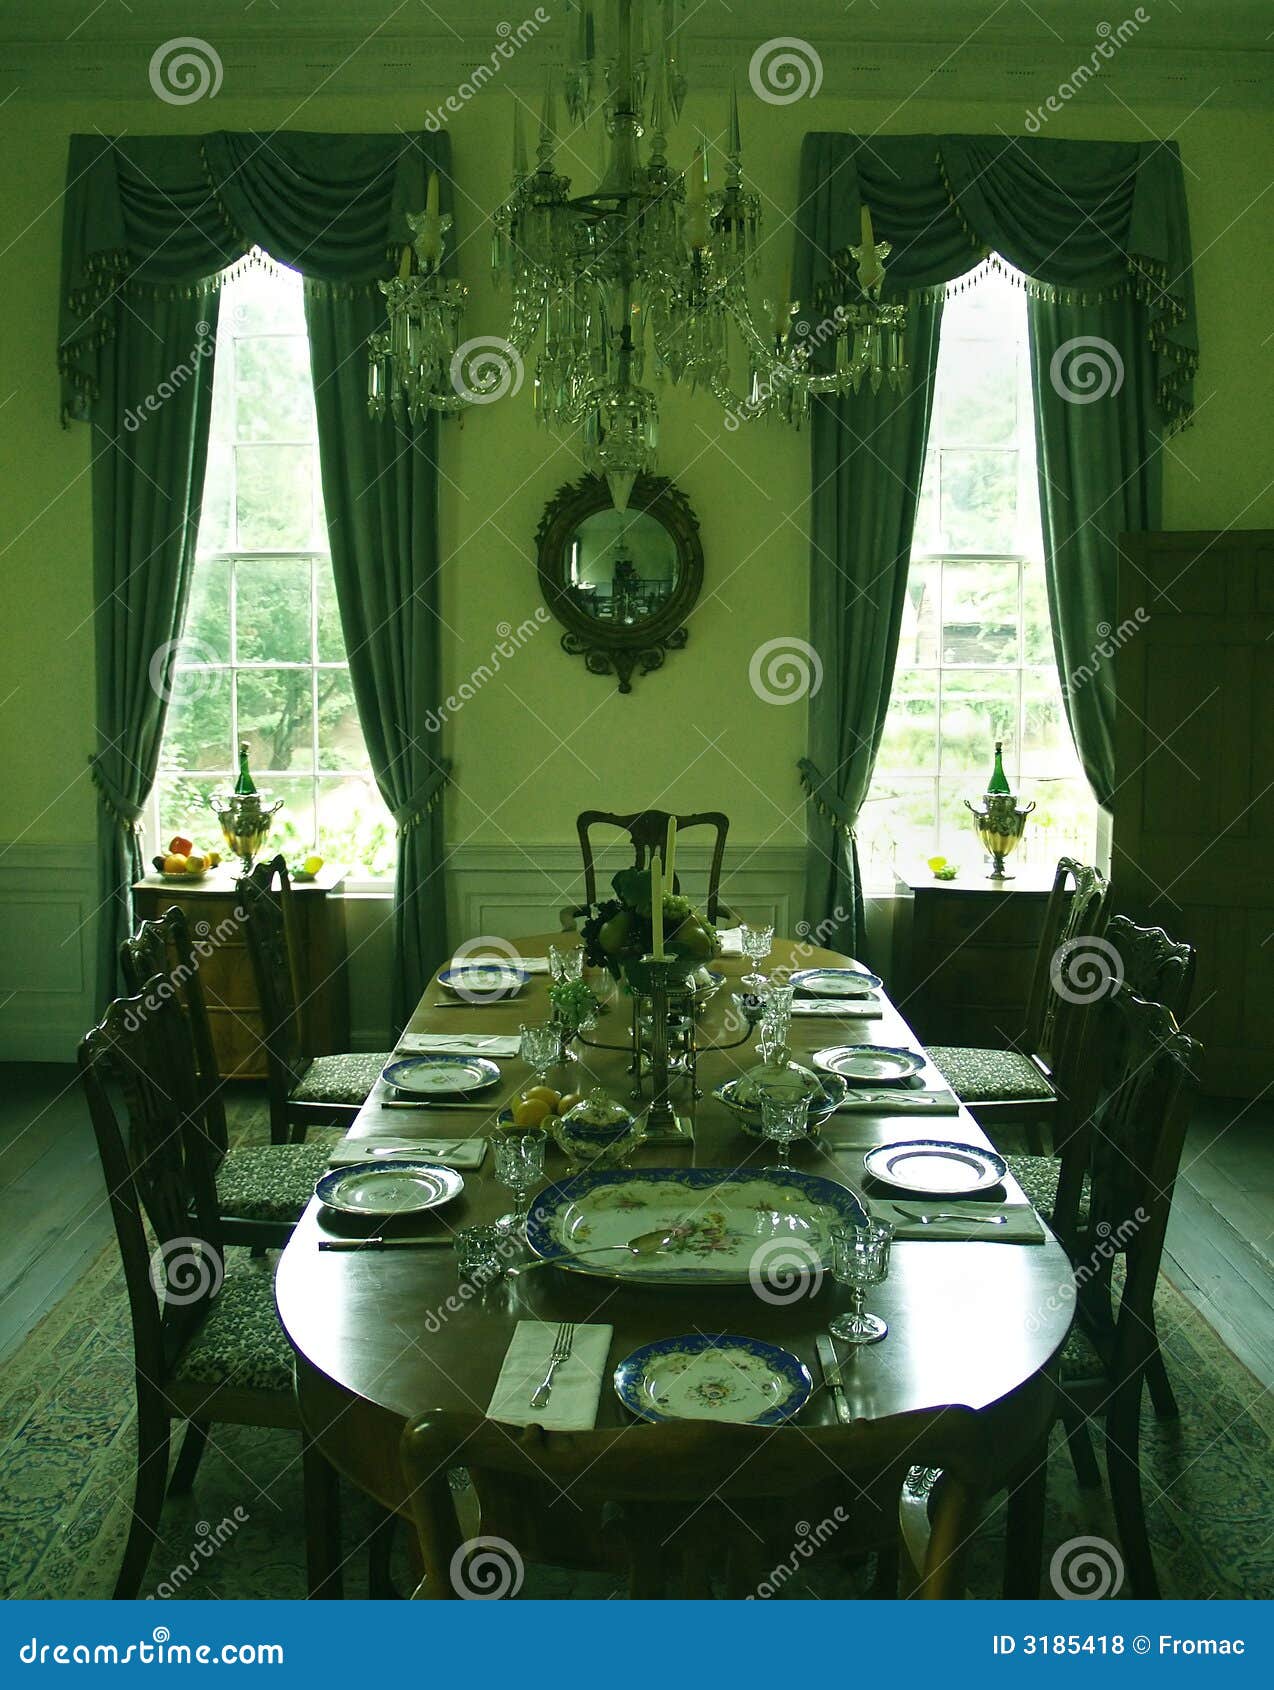 formal dining room